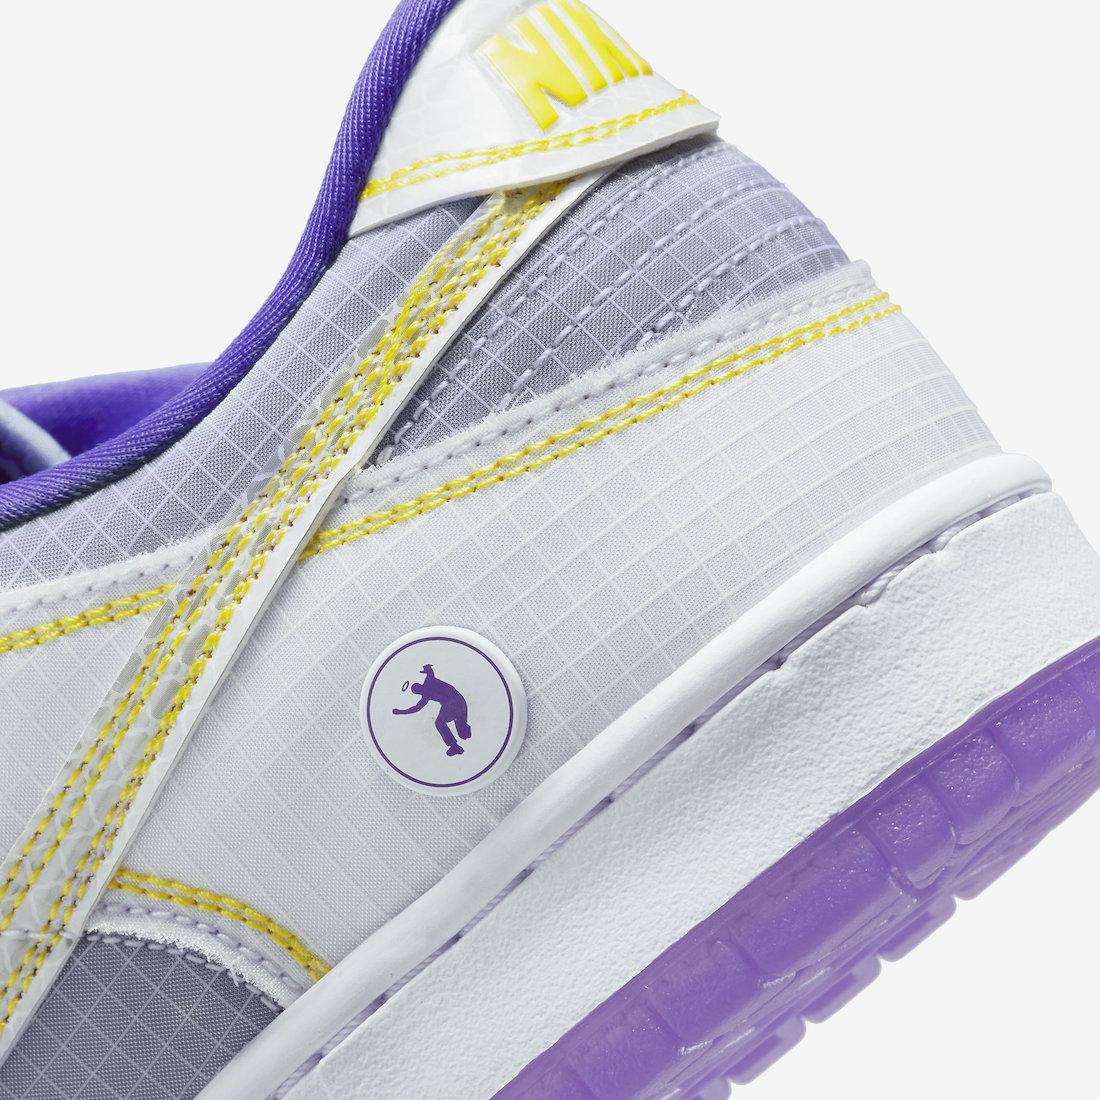 Union-Nike-Dunk-Low-Court-Purple-DJ9649-500-Release-Date-7